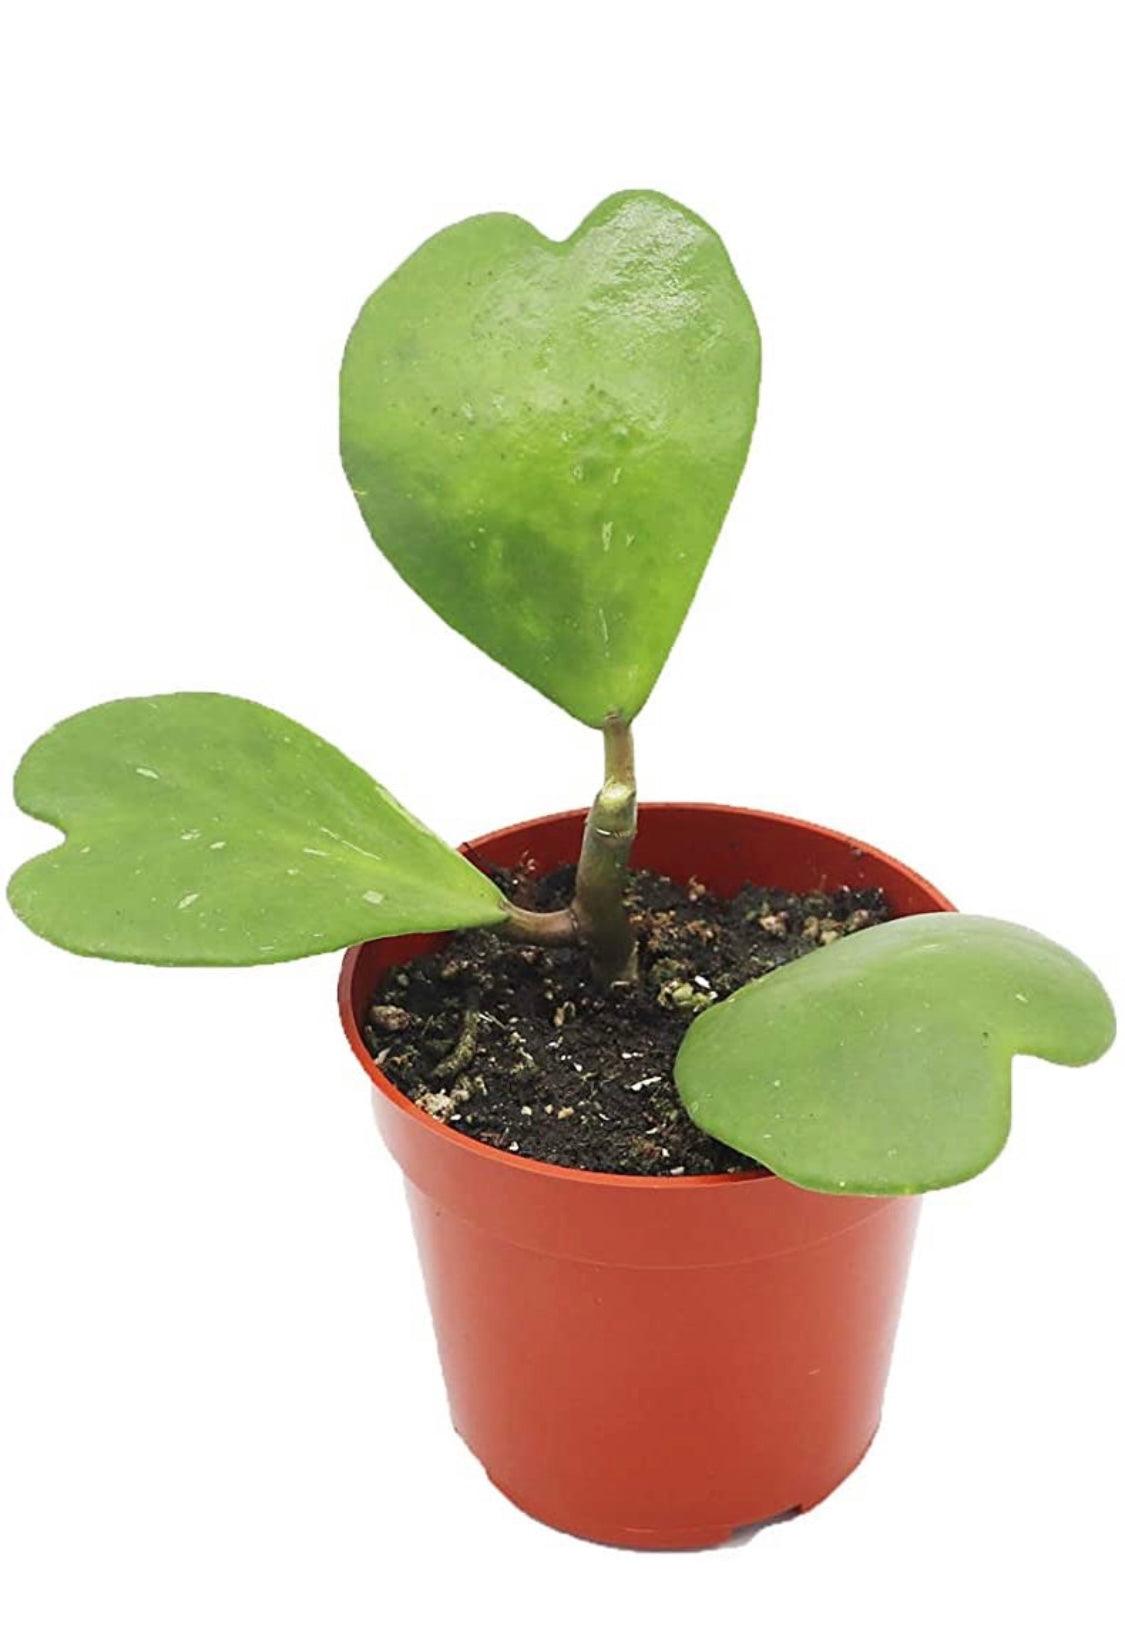 Hoya Kerrii - The Leafy Branch